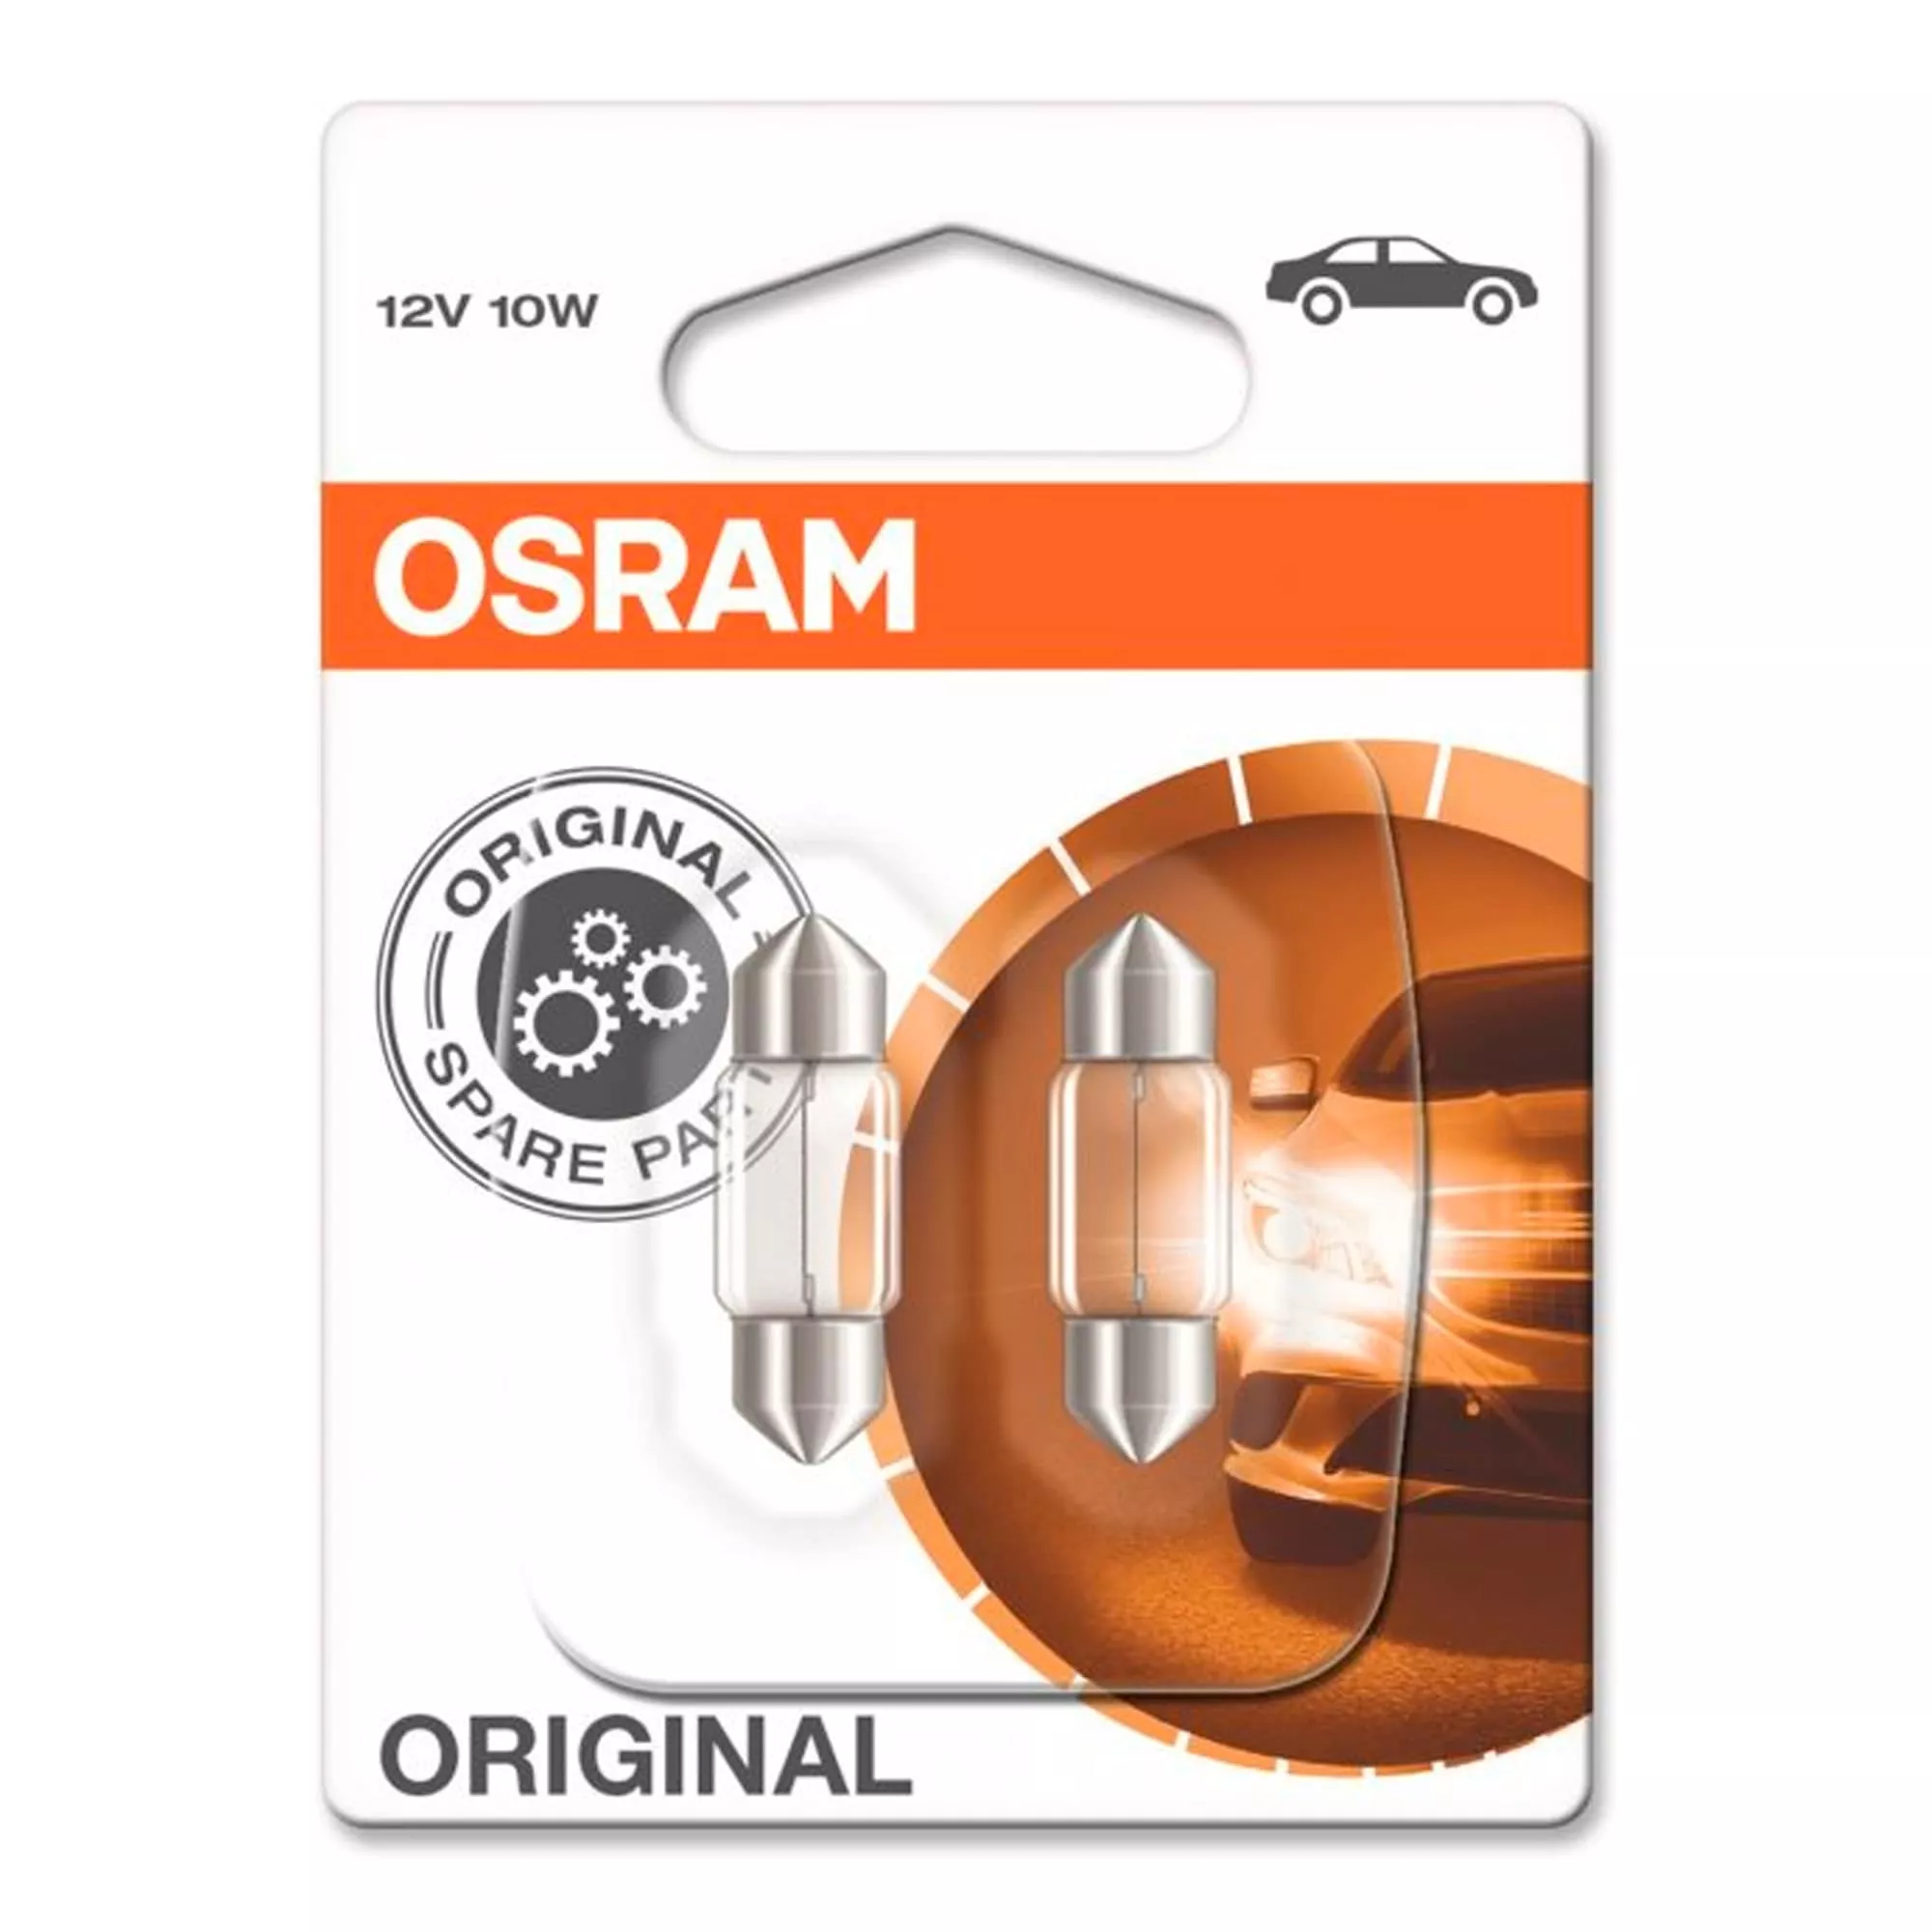 Лампа Osram Original C10W 12V 10W 6438